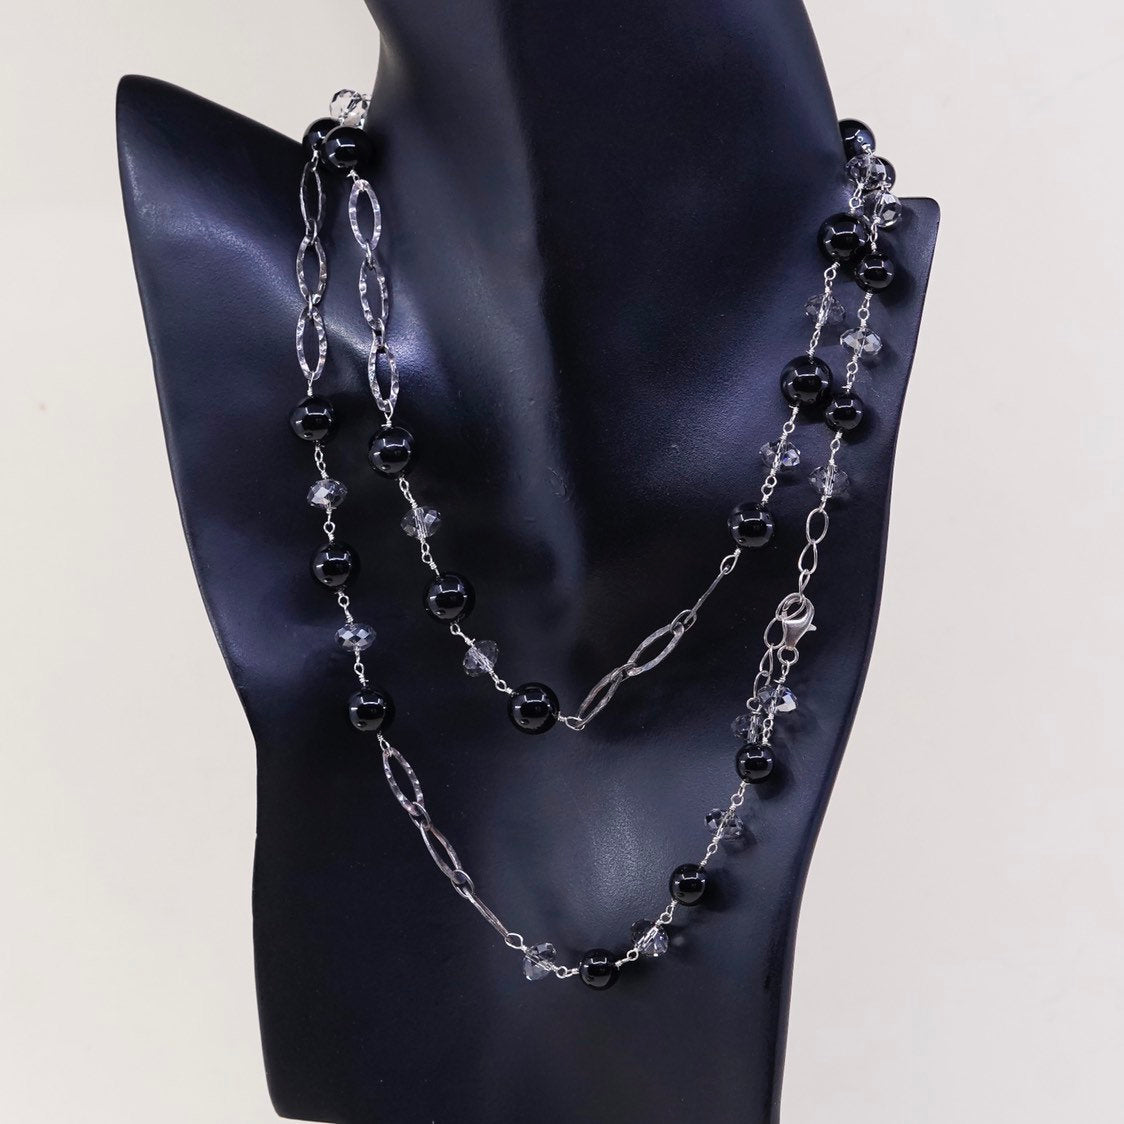 34" sweater Sterling silver handmade necklace 925 flatten chain w/ obsidian